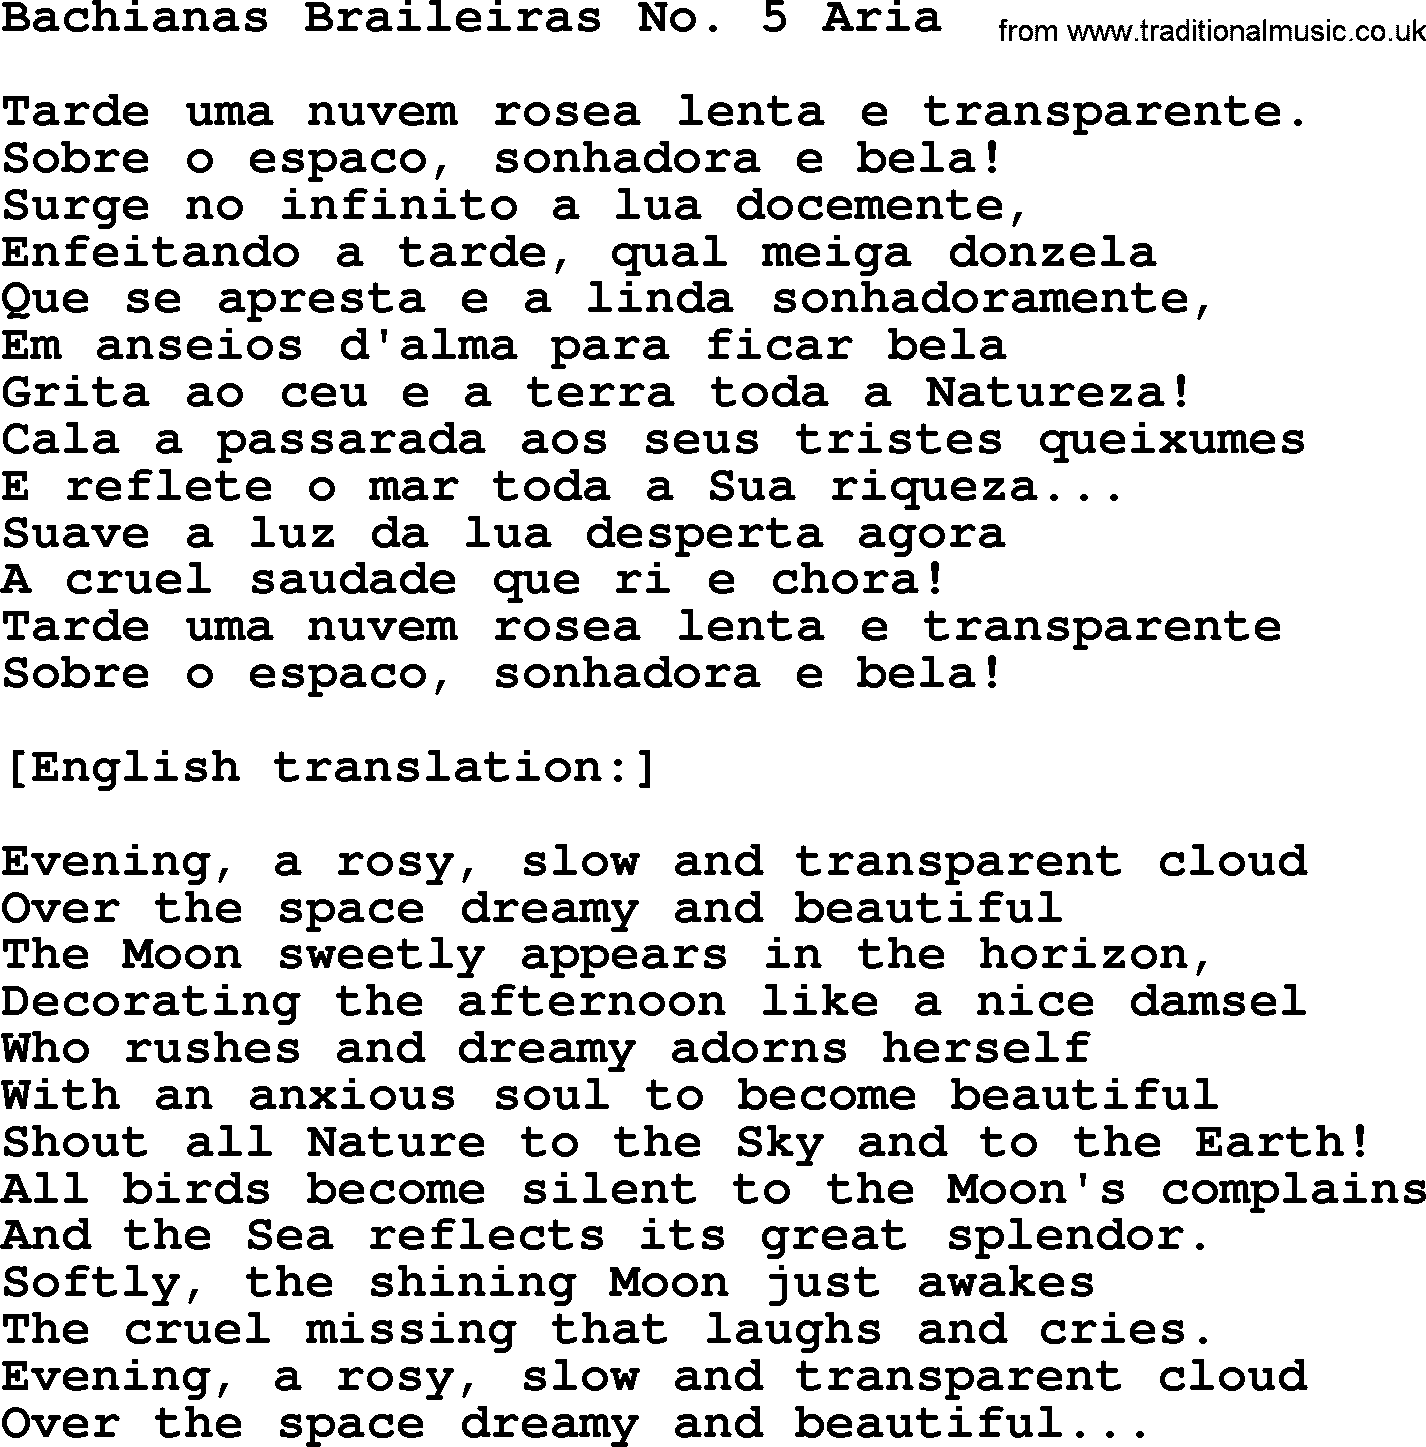 Joan Baez song Bachianas Braileiras No. 5 Aria, lyrics